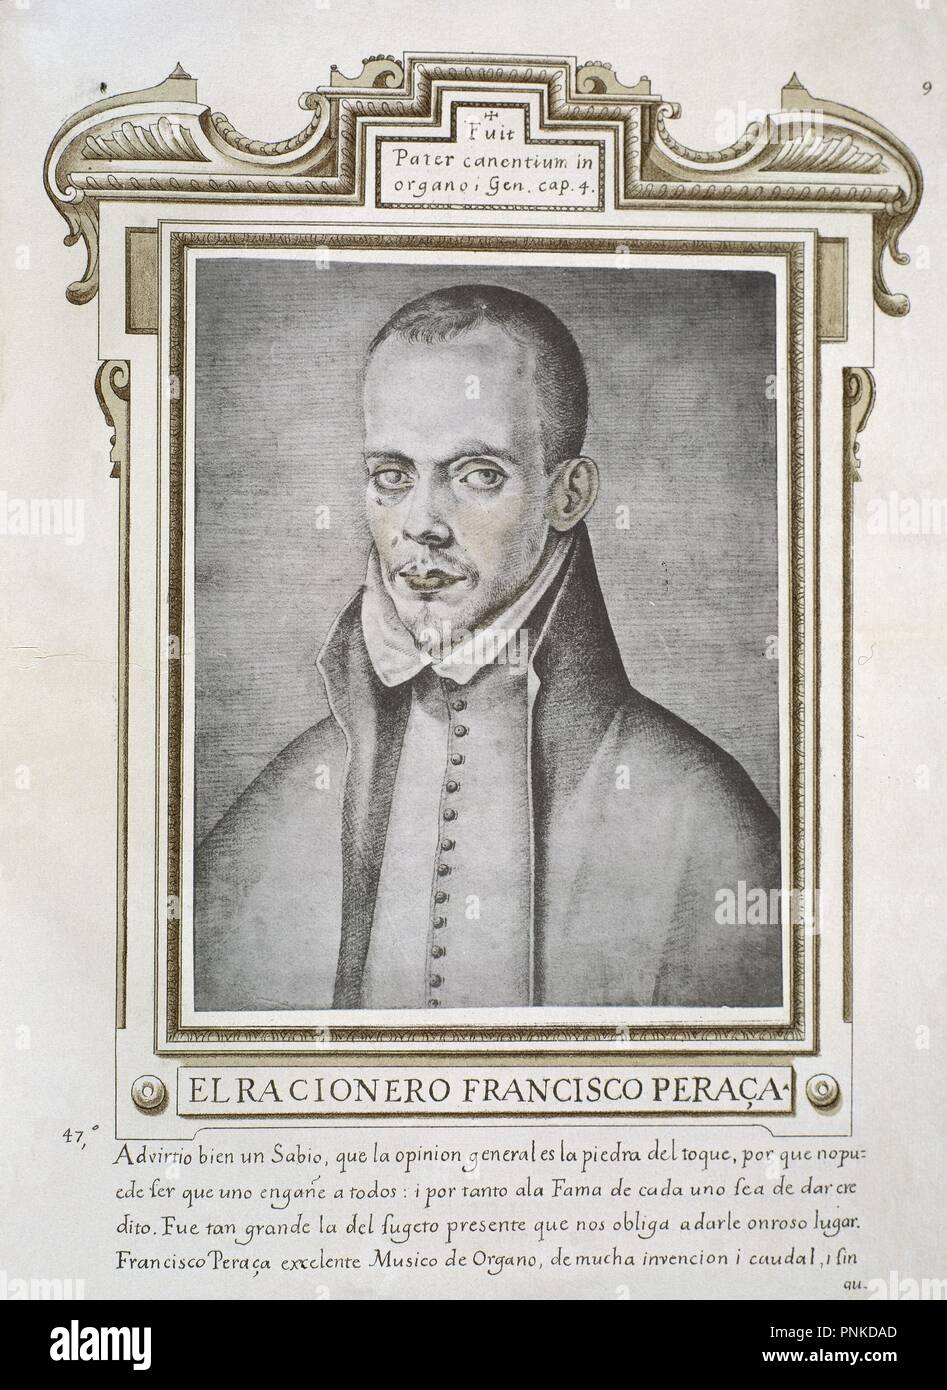 FRANCISCO PERAZA (1564-1598) - LIBRO DE RETRATOS DE ILUSTRES Y MEMORABLES VARONES - 1599. Author: PACHECO, FRANCISCO. Location: BIBLIOTECA NACIONAL-COLECCION. MADRID. SPAIN. Stock Photo